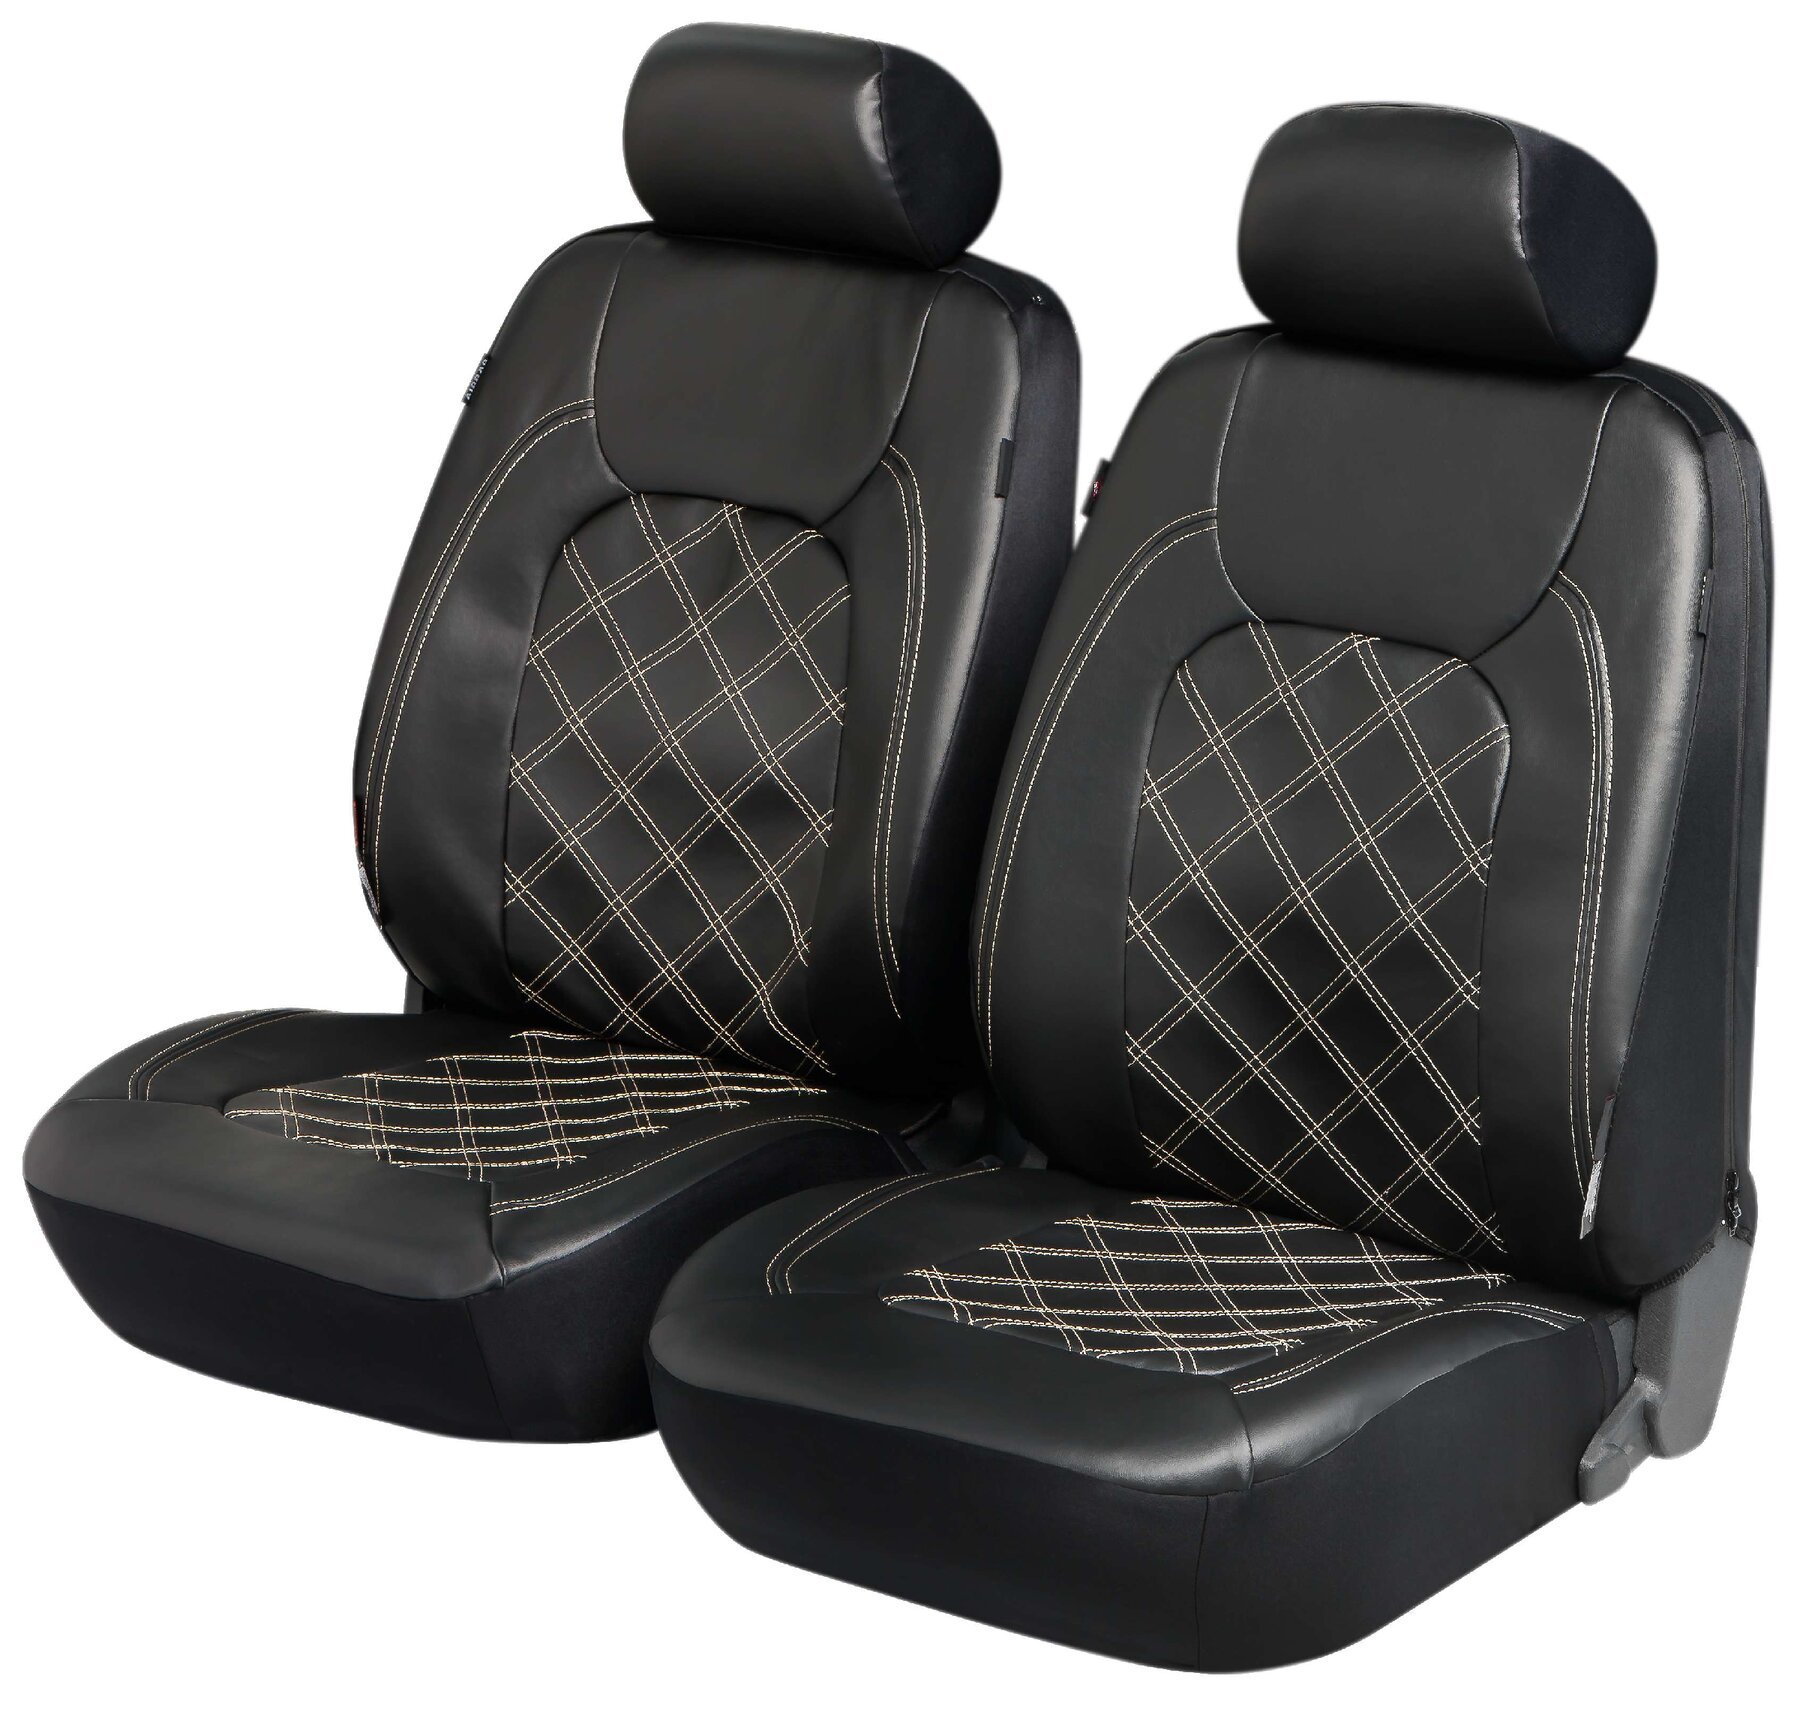 ZIPP IT Deluxe Paddington copri sedile auto Paddington in similpelle per due sedili anteriori con sistema di chiusura a cerniera